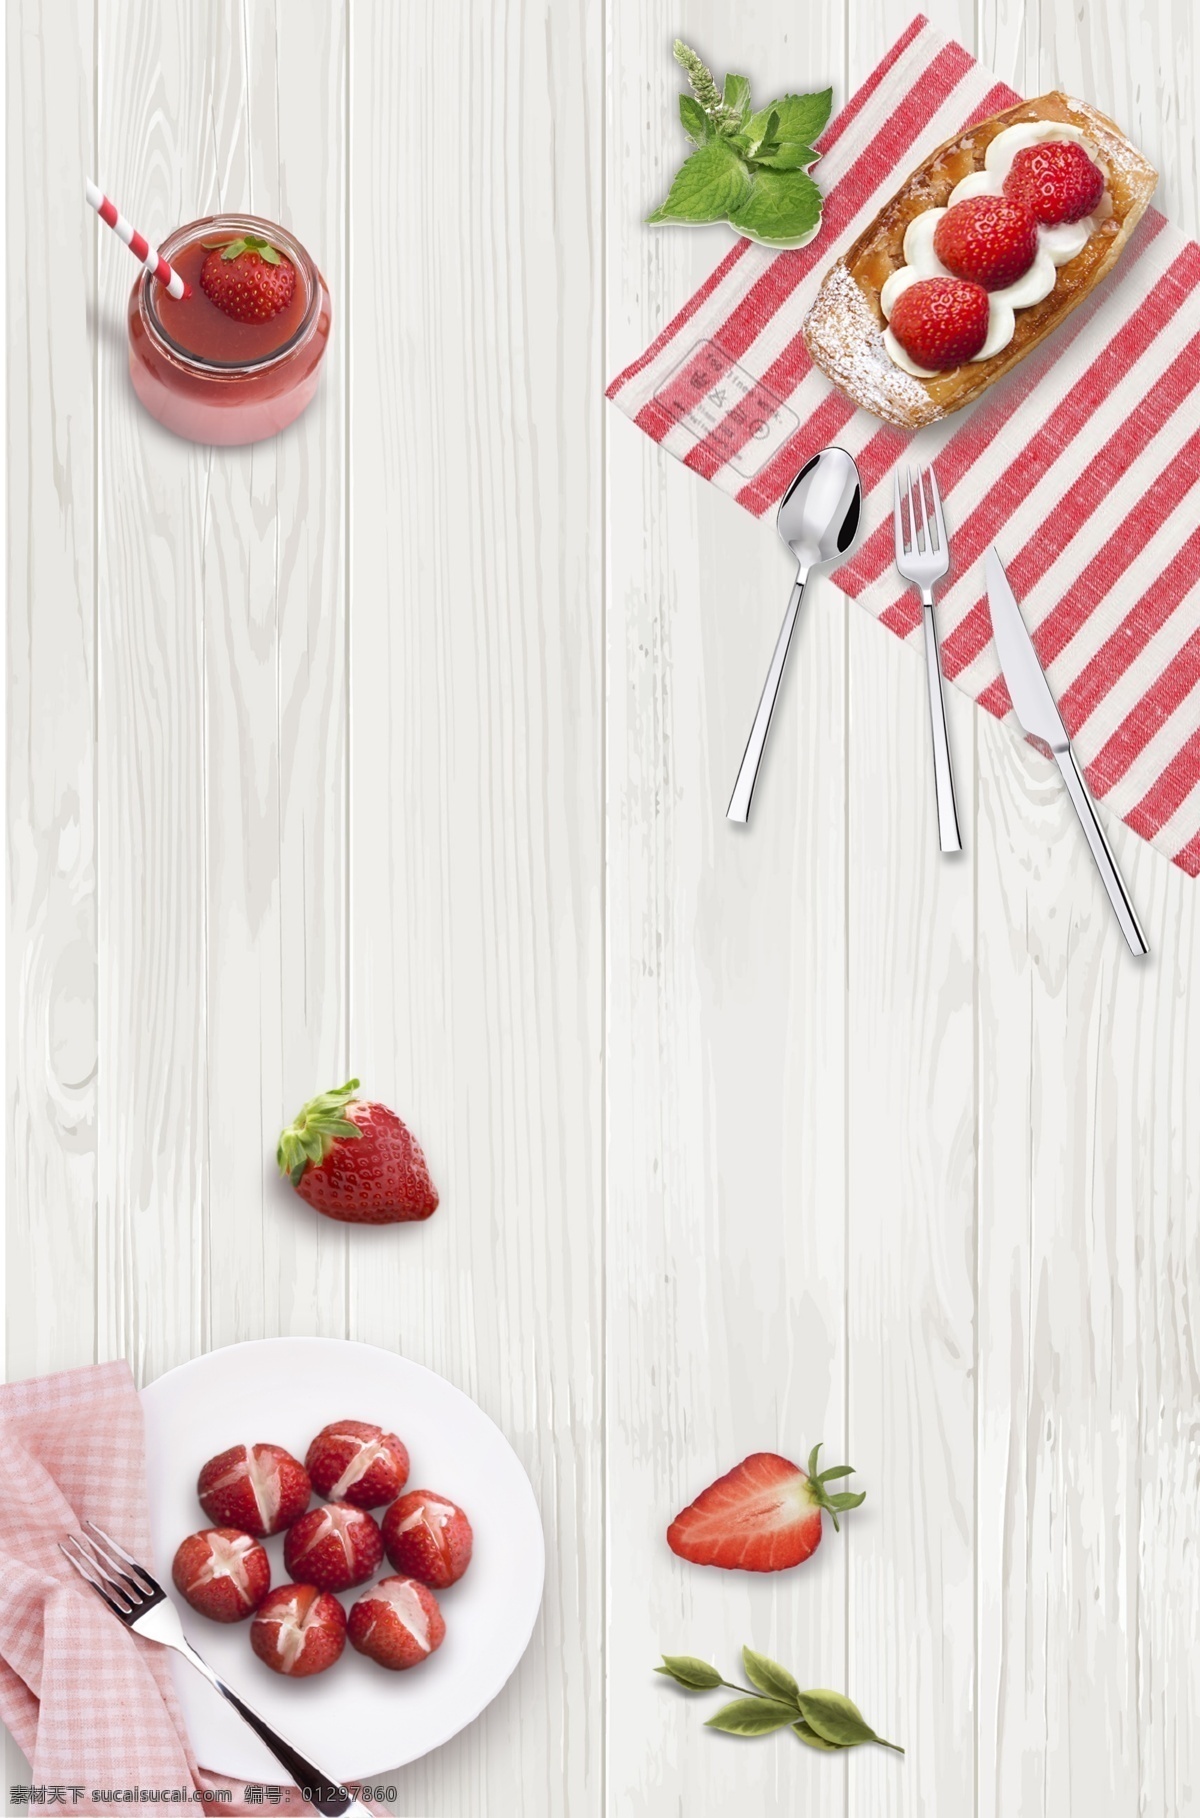 夏季 水果 草莓 蛋糕 广告 背景 俯视图背景 俯视图